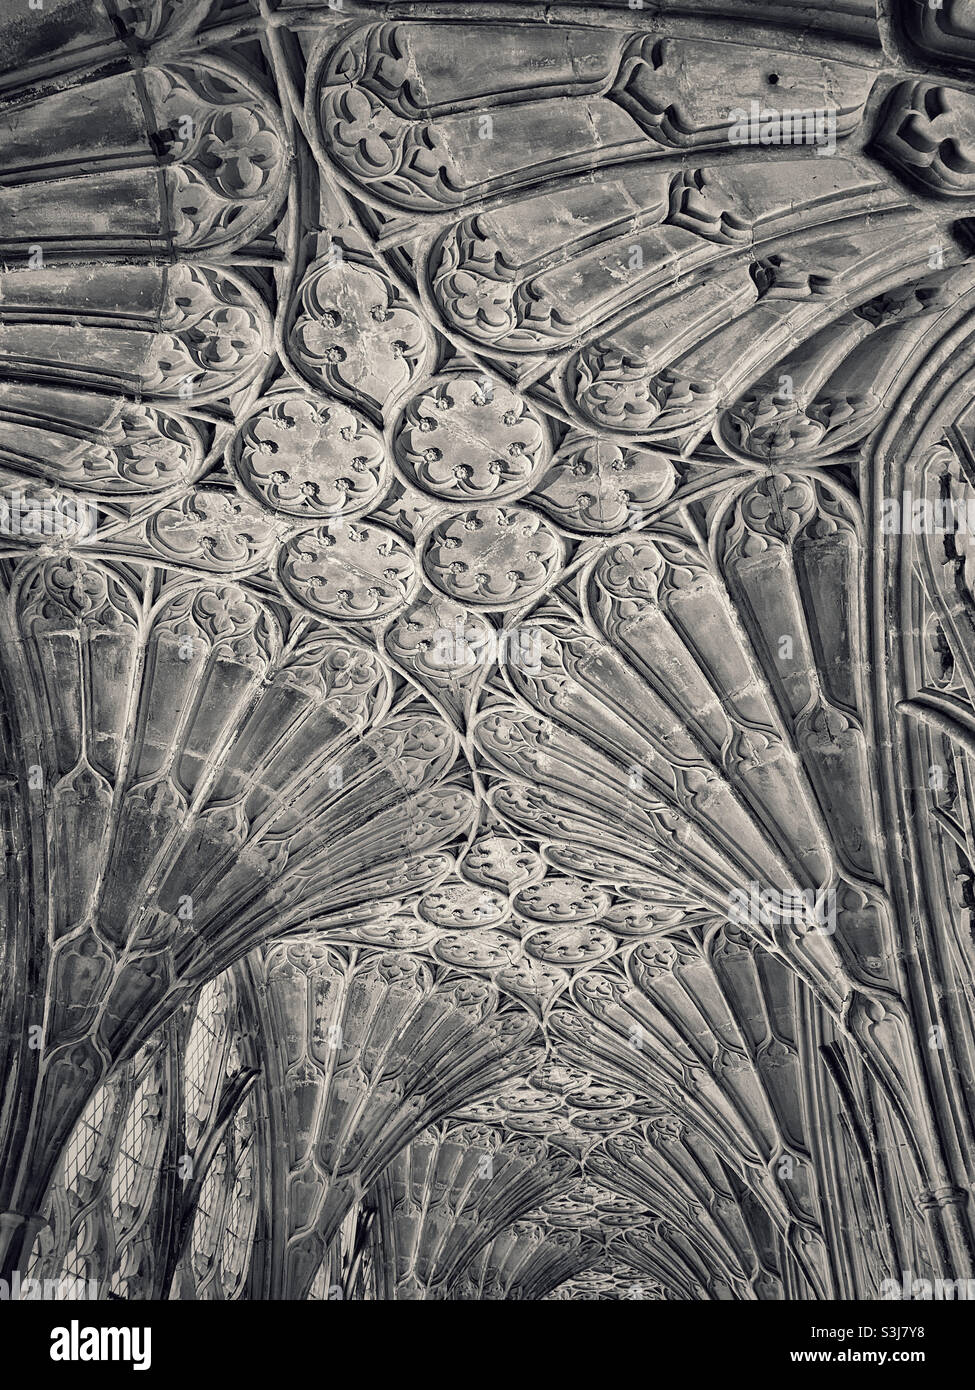 Un'immagine monocromatica in tonalità degli spettacolari soffitti a volta a ventaglio nei chiostri della Cattedrale di Gloucester in Inghilterra, Regno Unito. Quest'area è stata utilizzata per le pellicole di Harry Potter. Foto ©️ COLIN HOSKINS. Foto Stock